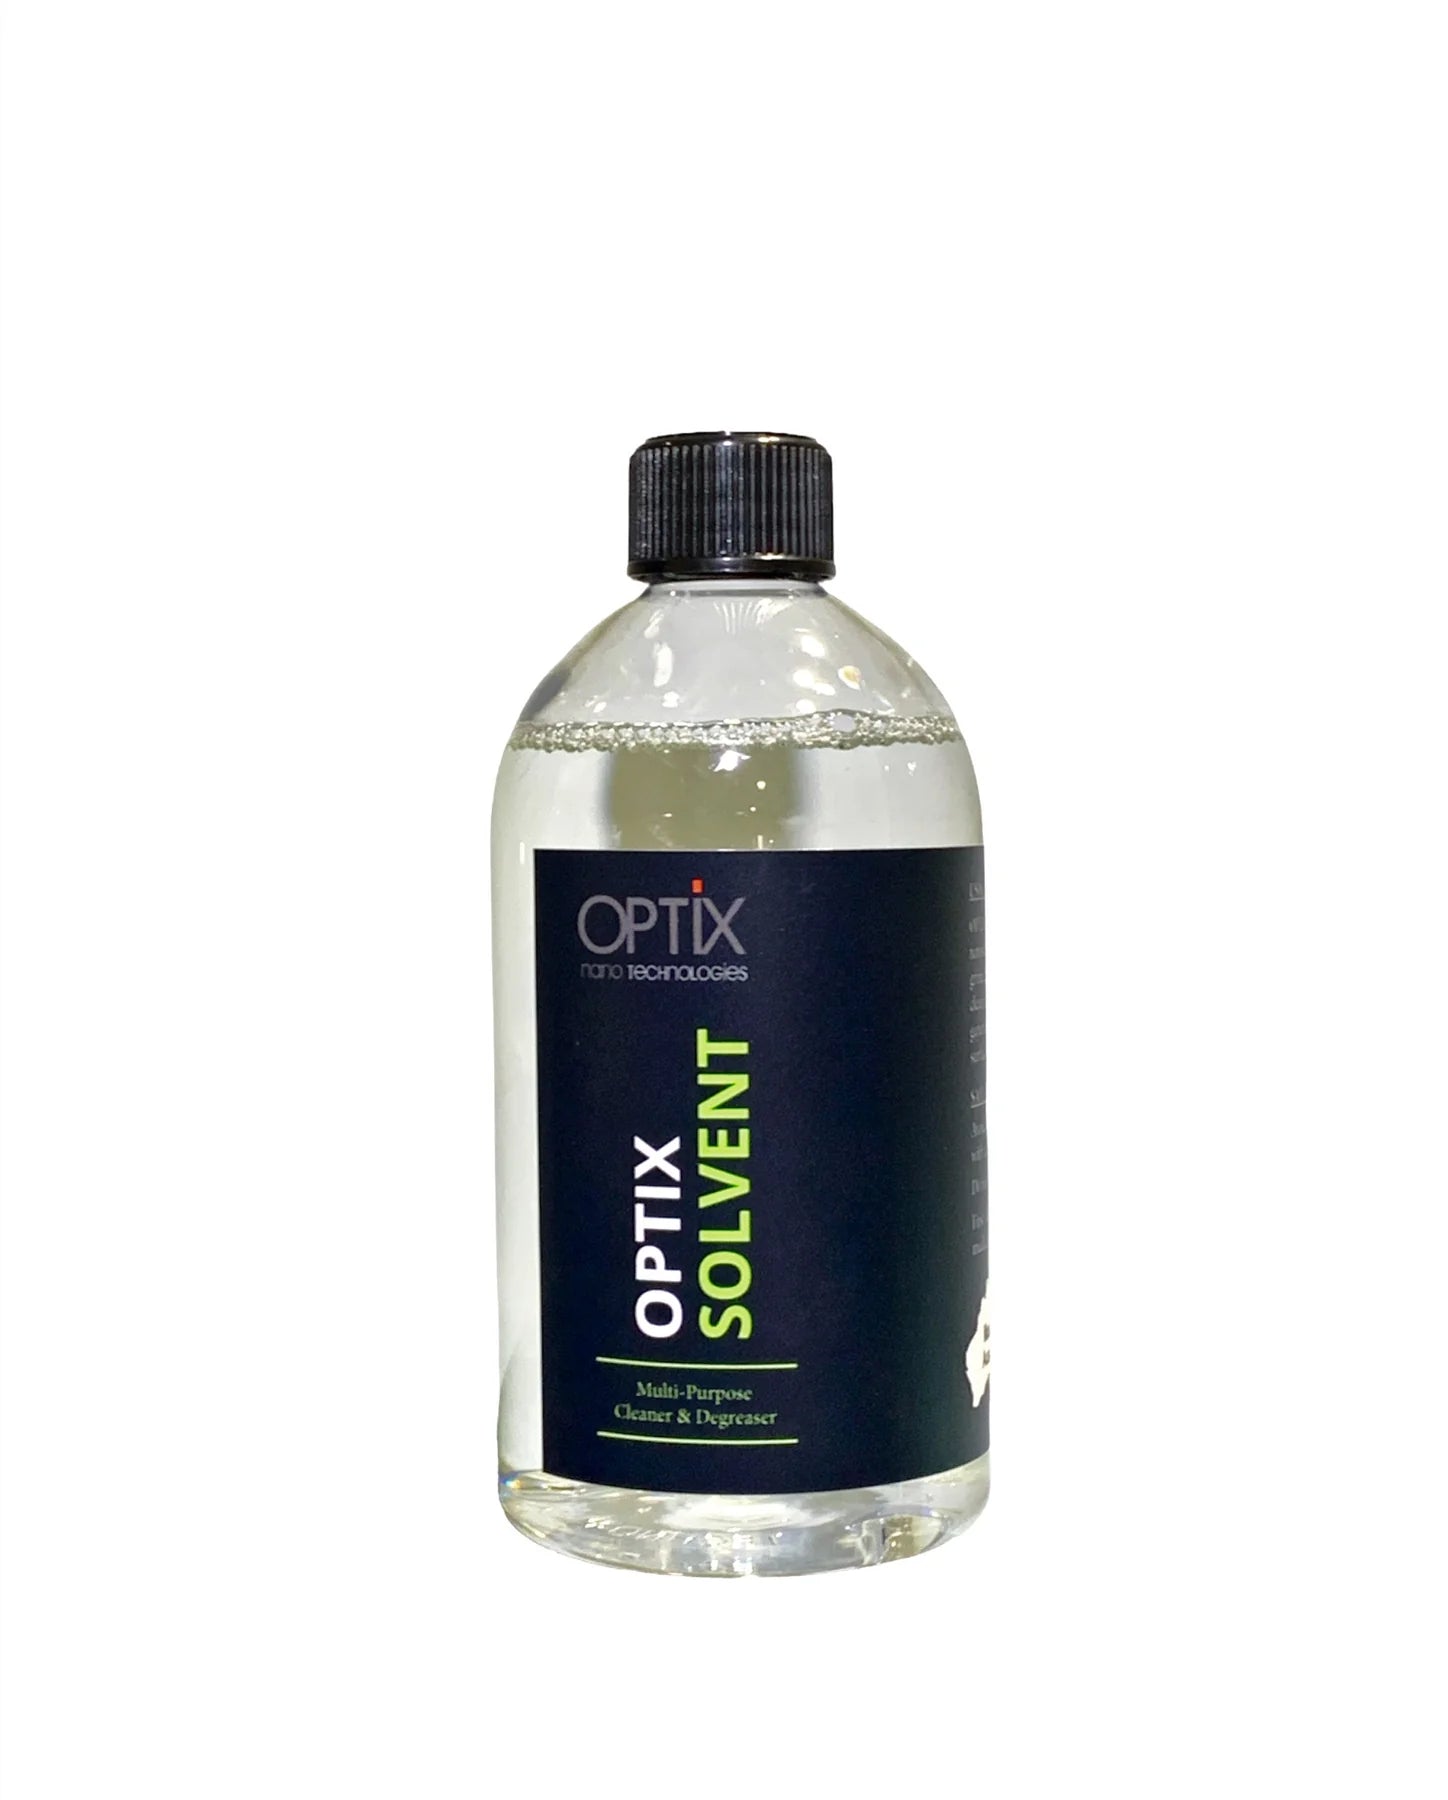 OPTiX Solvent Cleaner